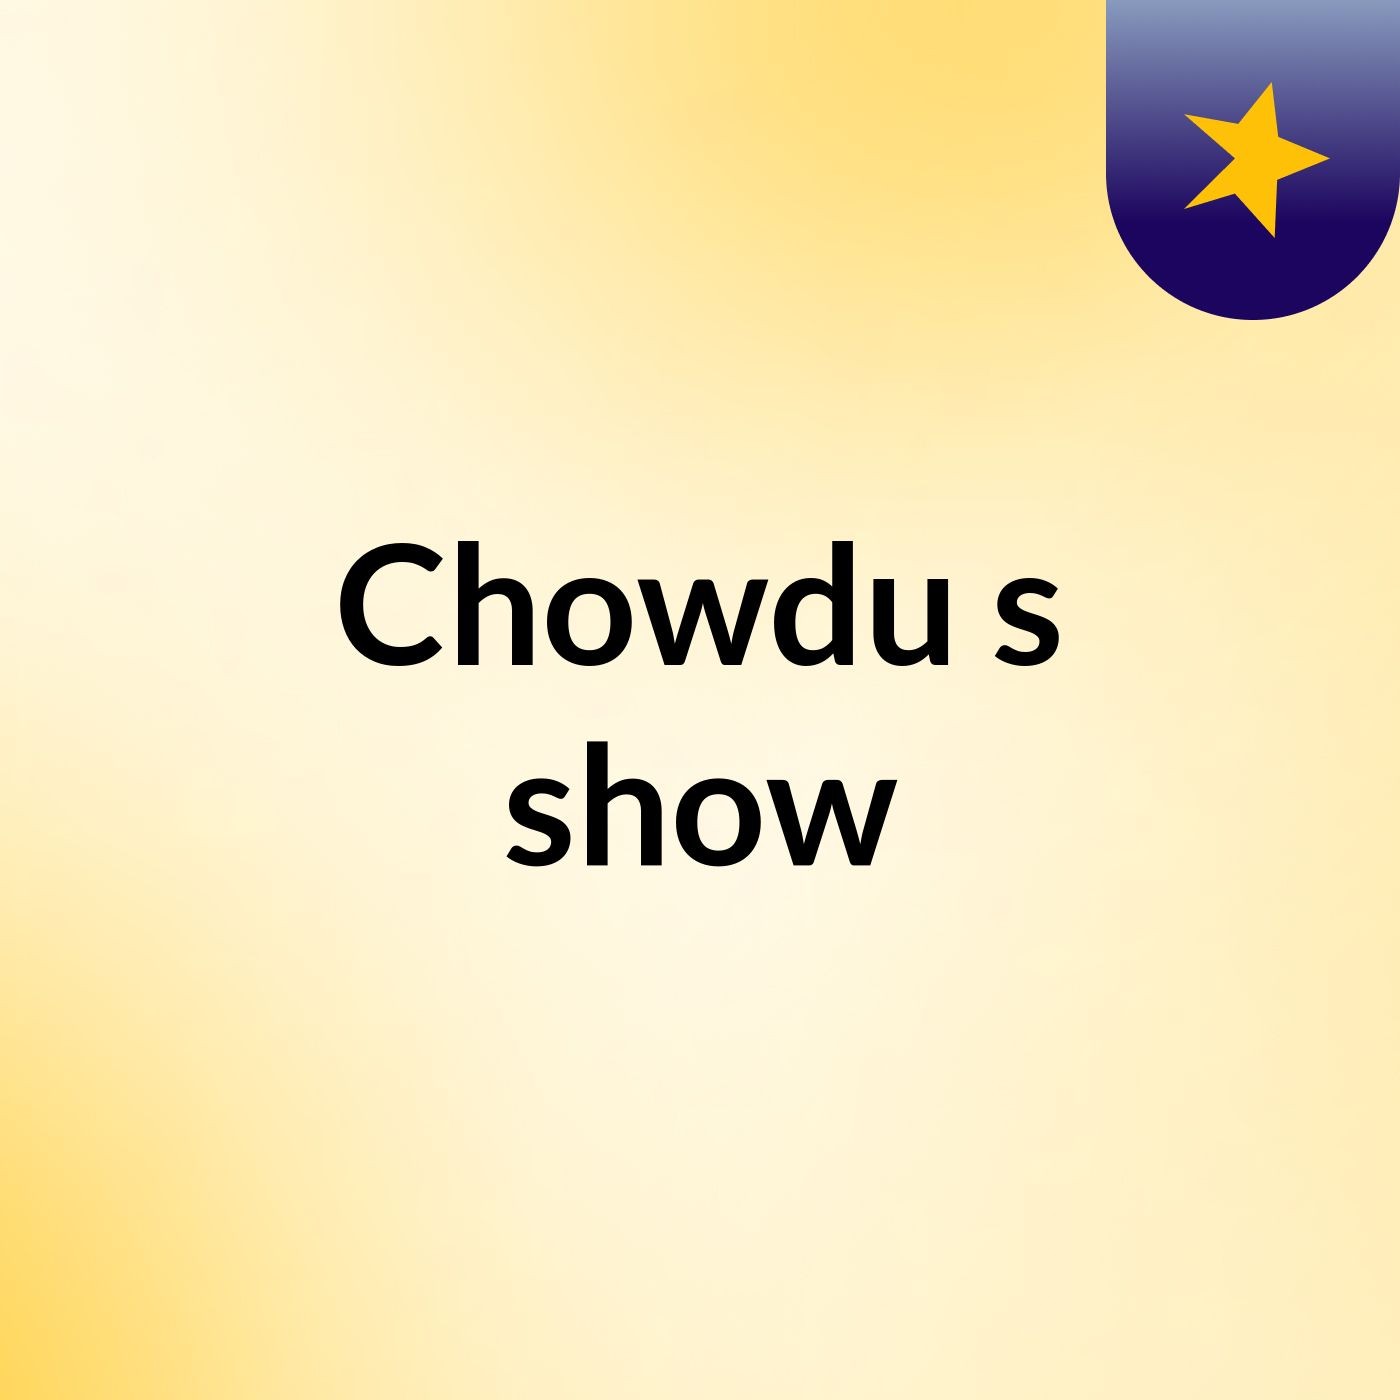 Chowdu's show